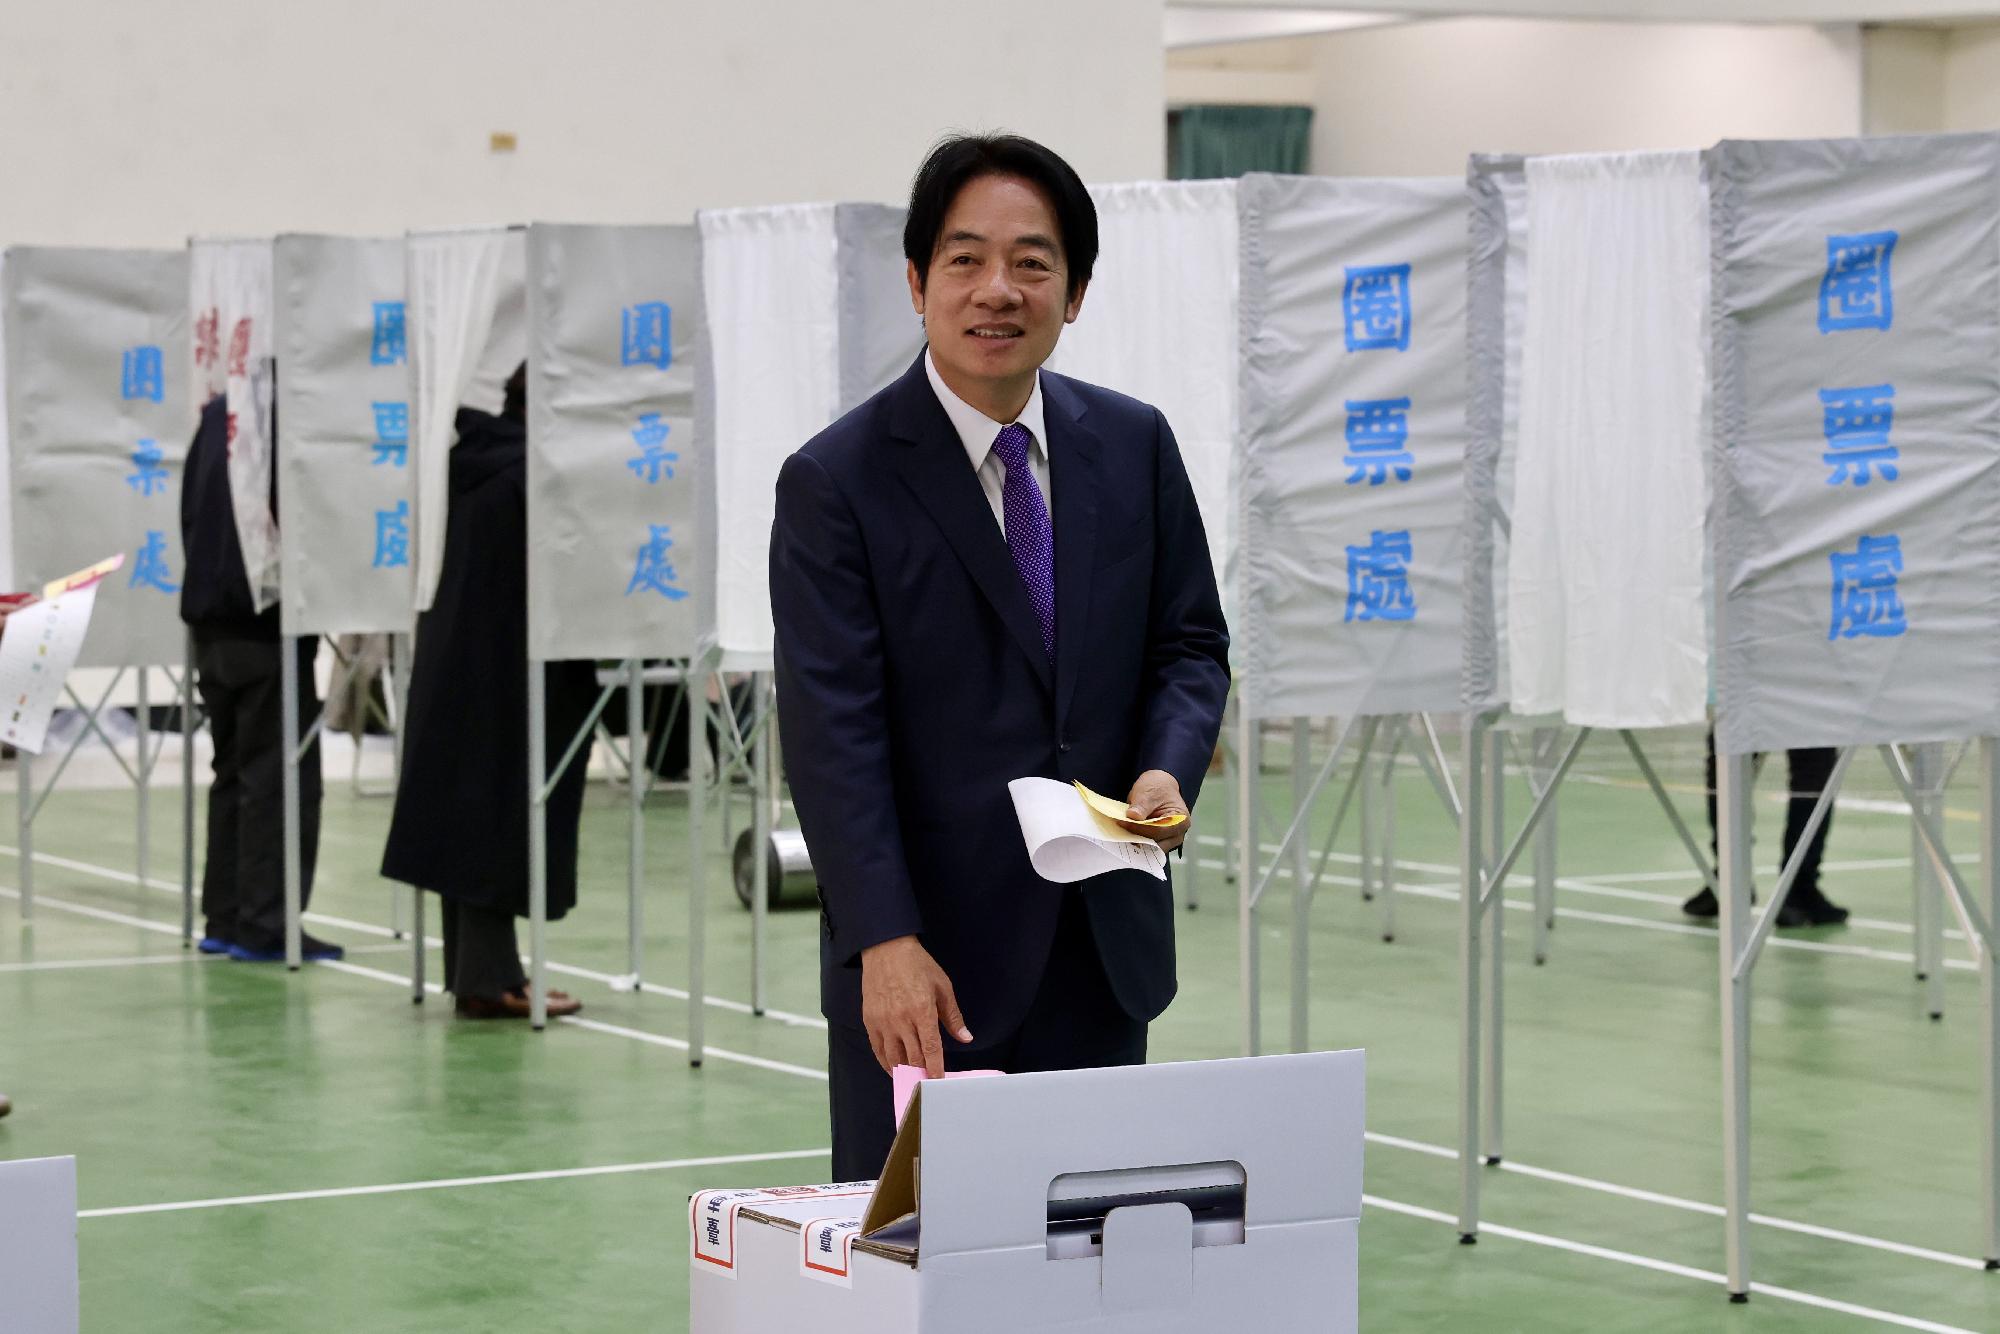  Tajvanon a kormányzópárt jelöltje nyerte az elnökválasztást + videó